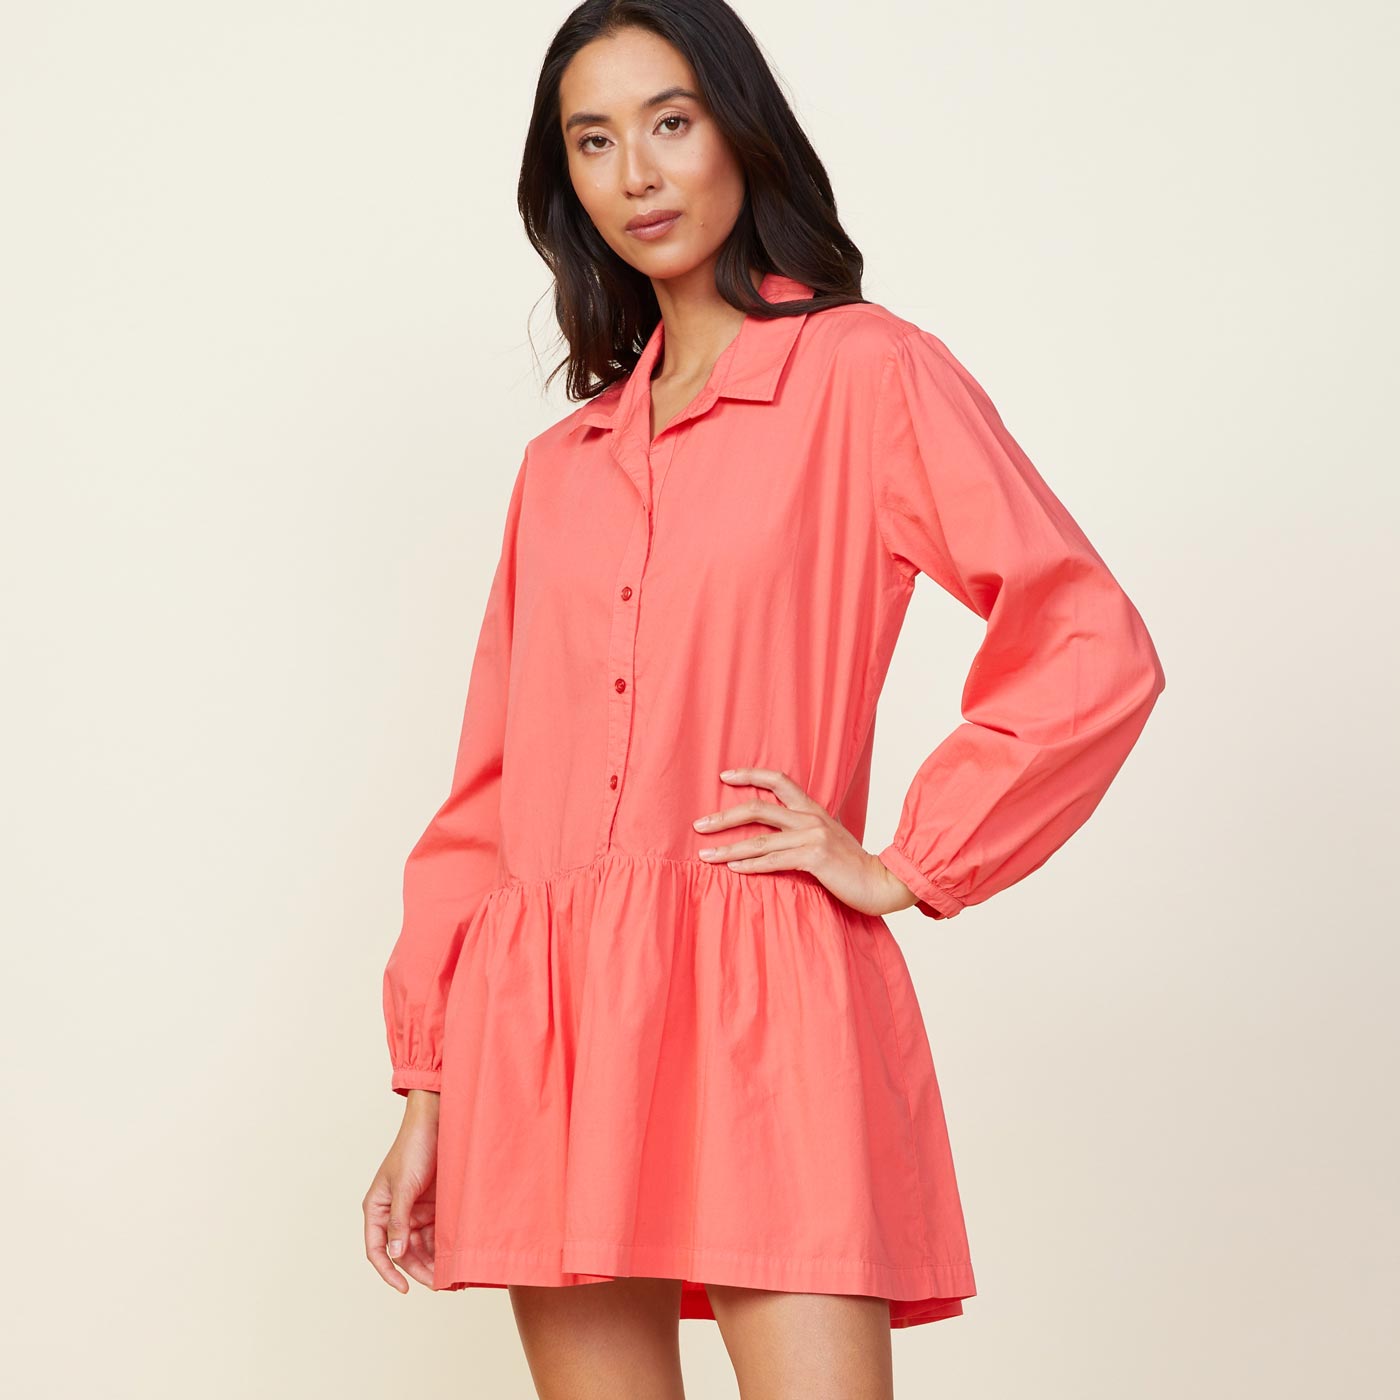 Side view of model wearing the poplin easy shirt dress in watermelon.